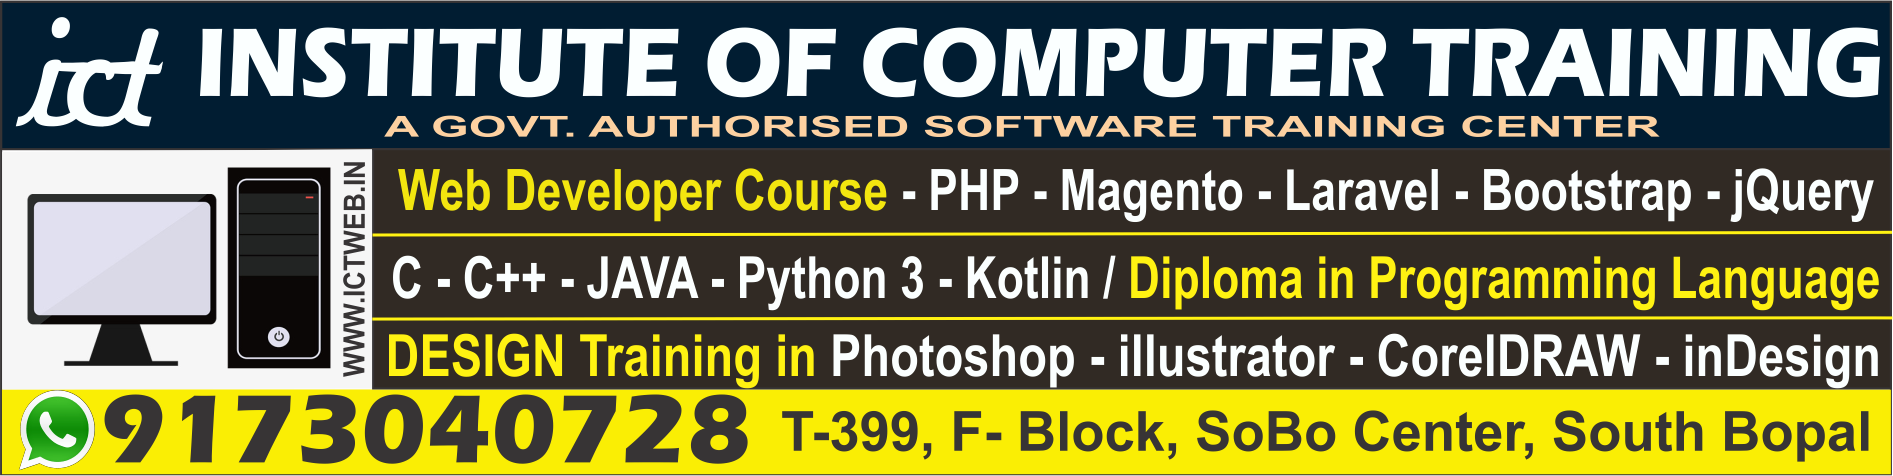 Institute of Computer Training|Schools|Education